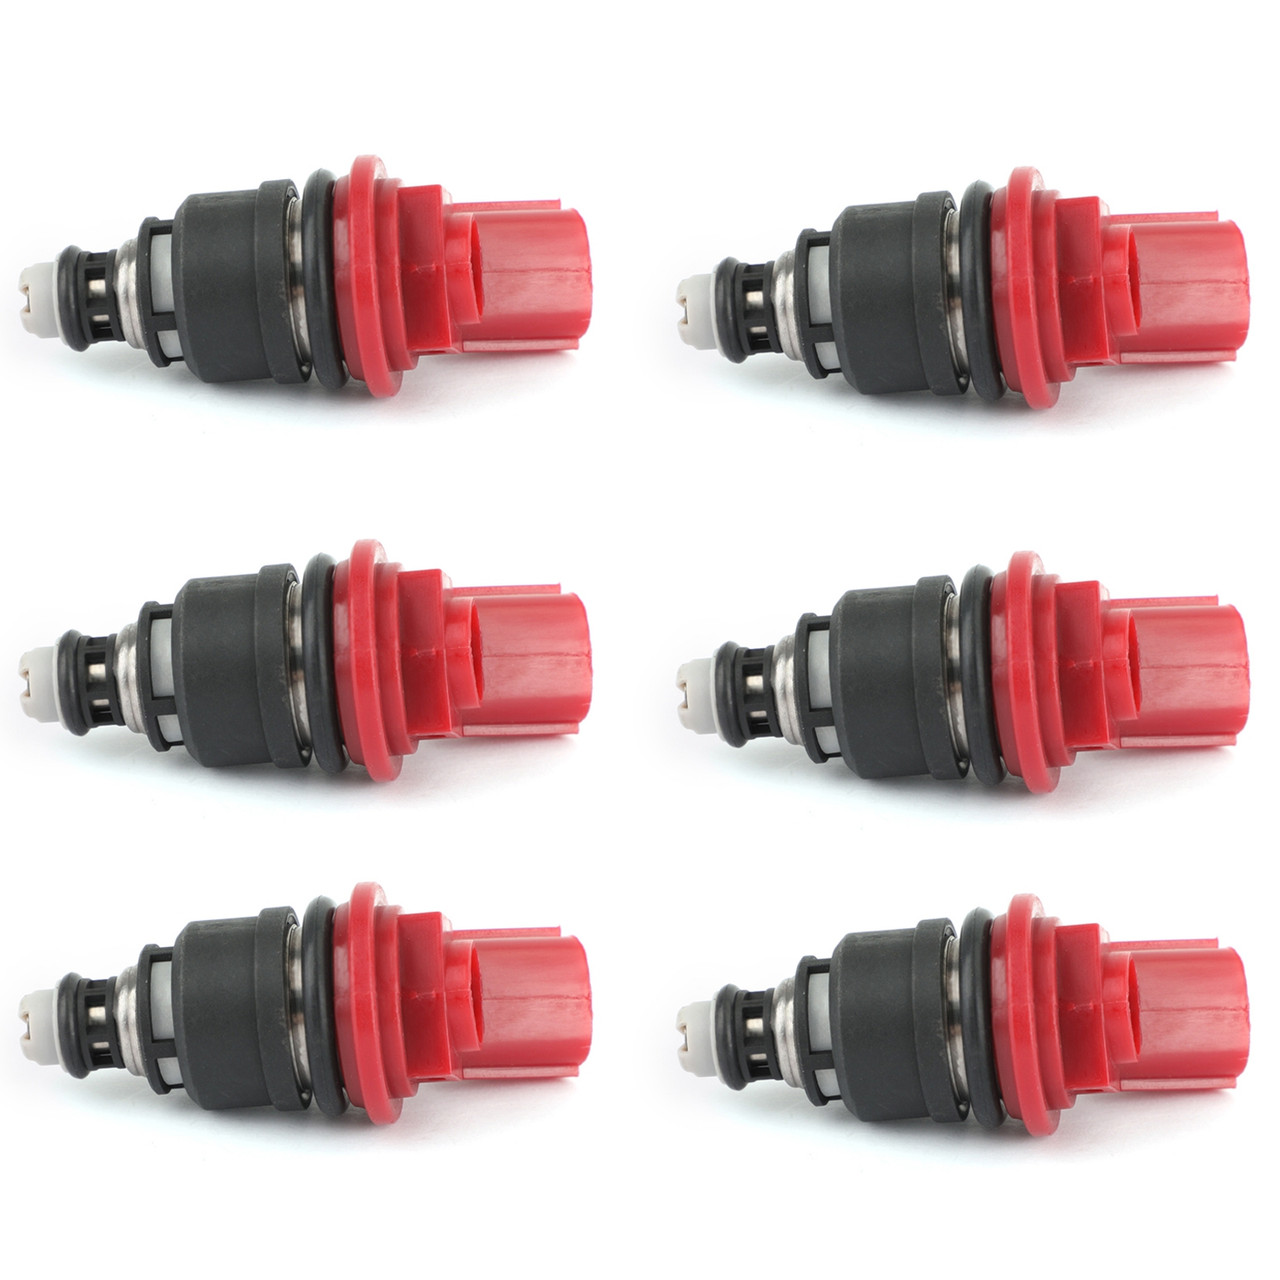 6PCS Fuel Injectors 16600-96E01 Fit for Nissan Altima Maxima Sentra Infiniti Q45 J30 G20 Red